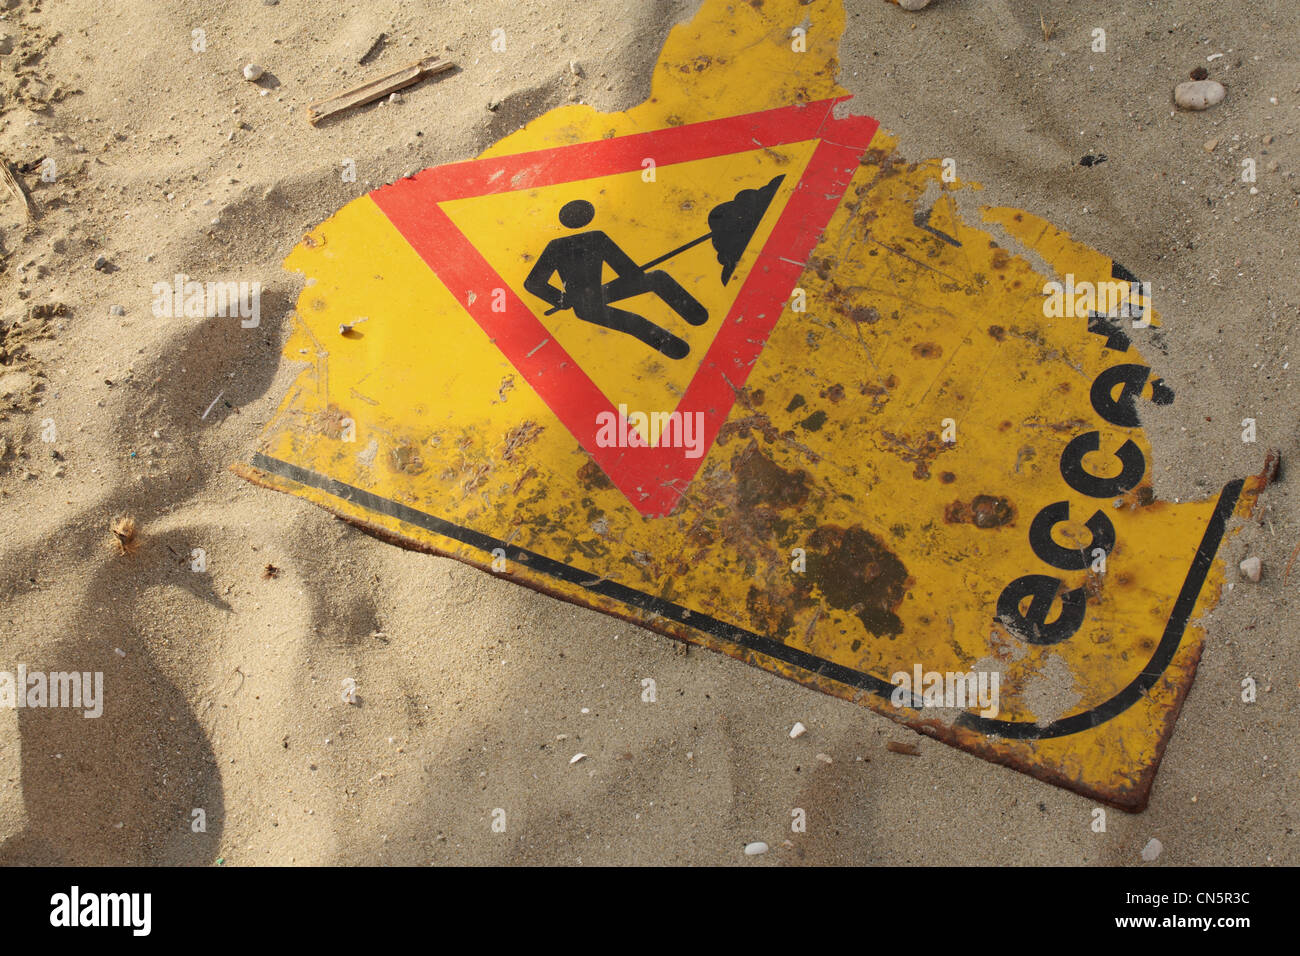 Un 'wok in progress' señales de carretera parcialmente enterrado bajo una capa de arena. Signo de la alta contaminación de la playa. Foto de stock